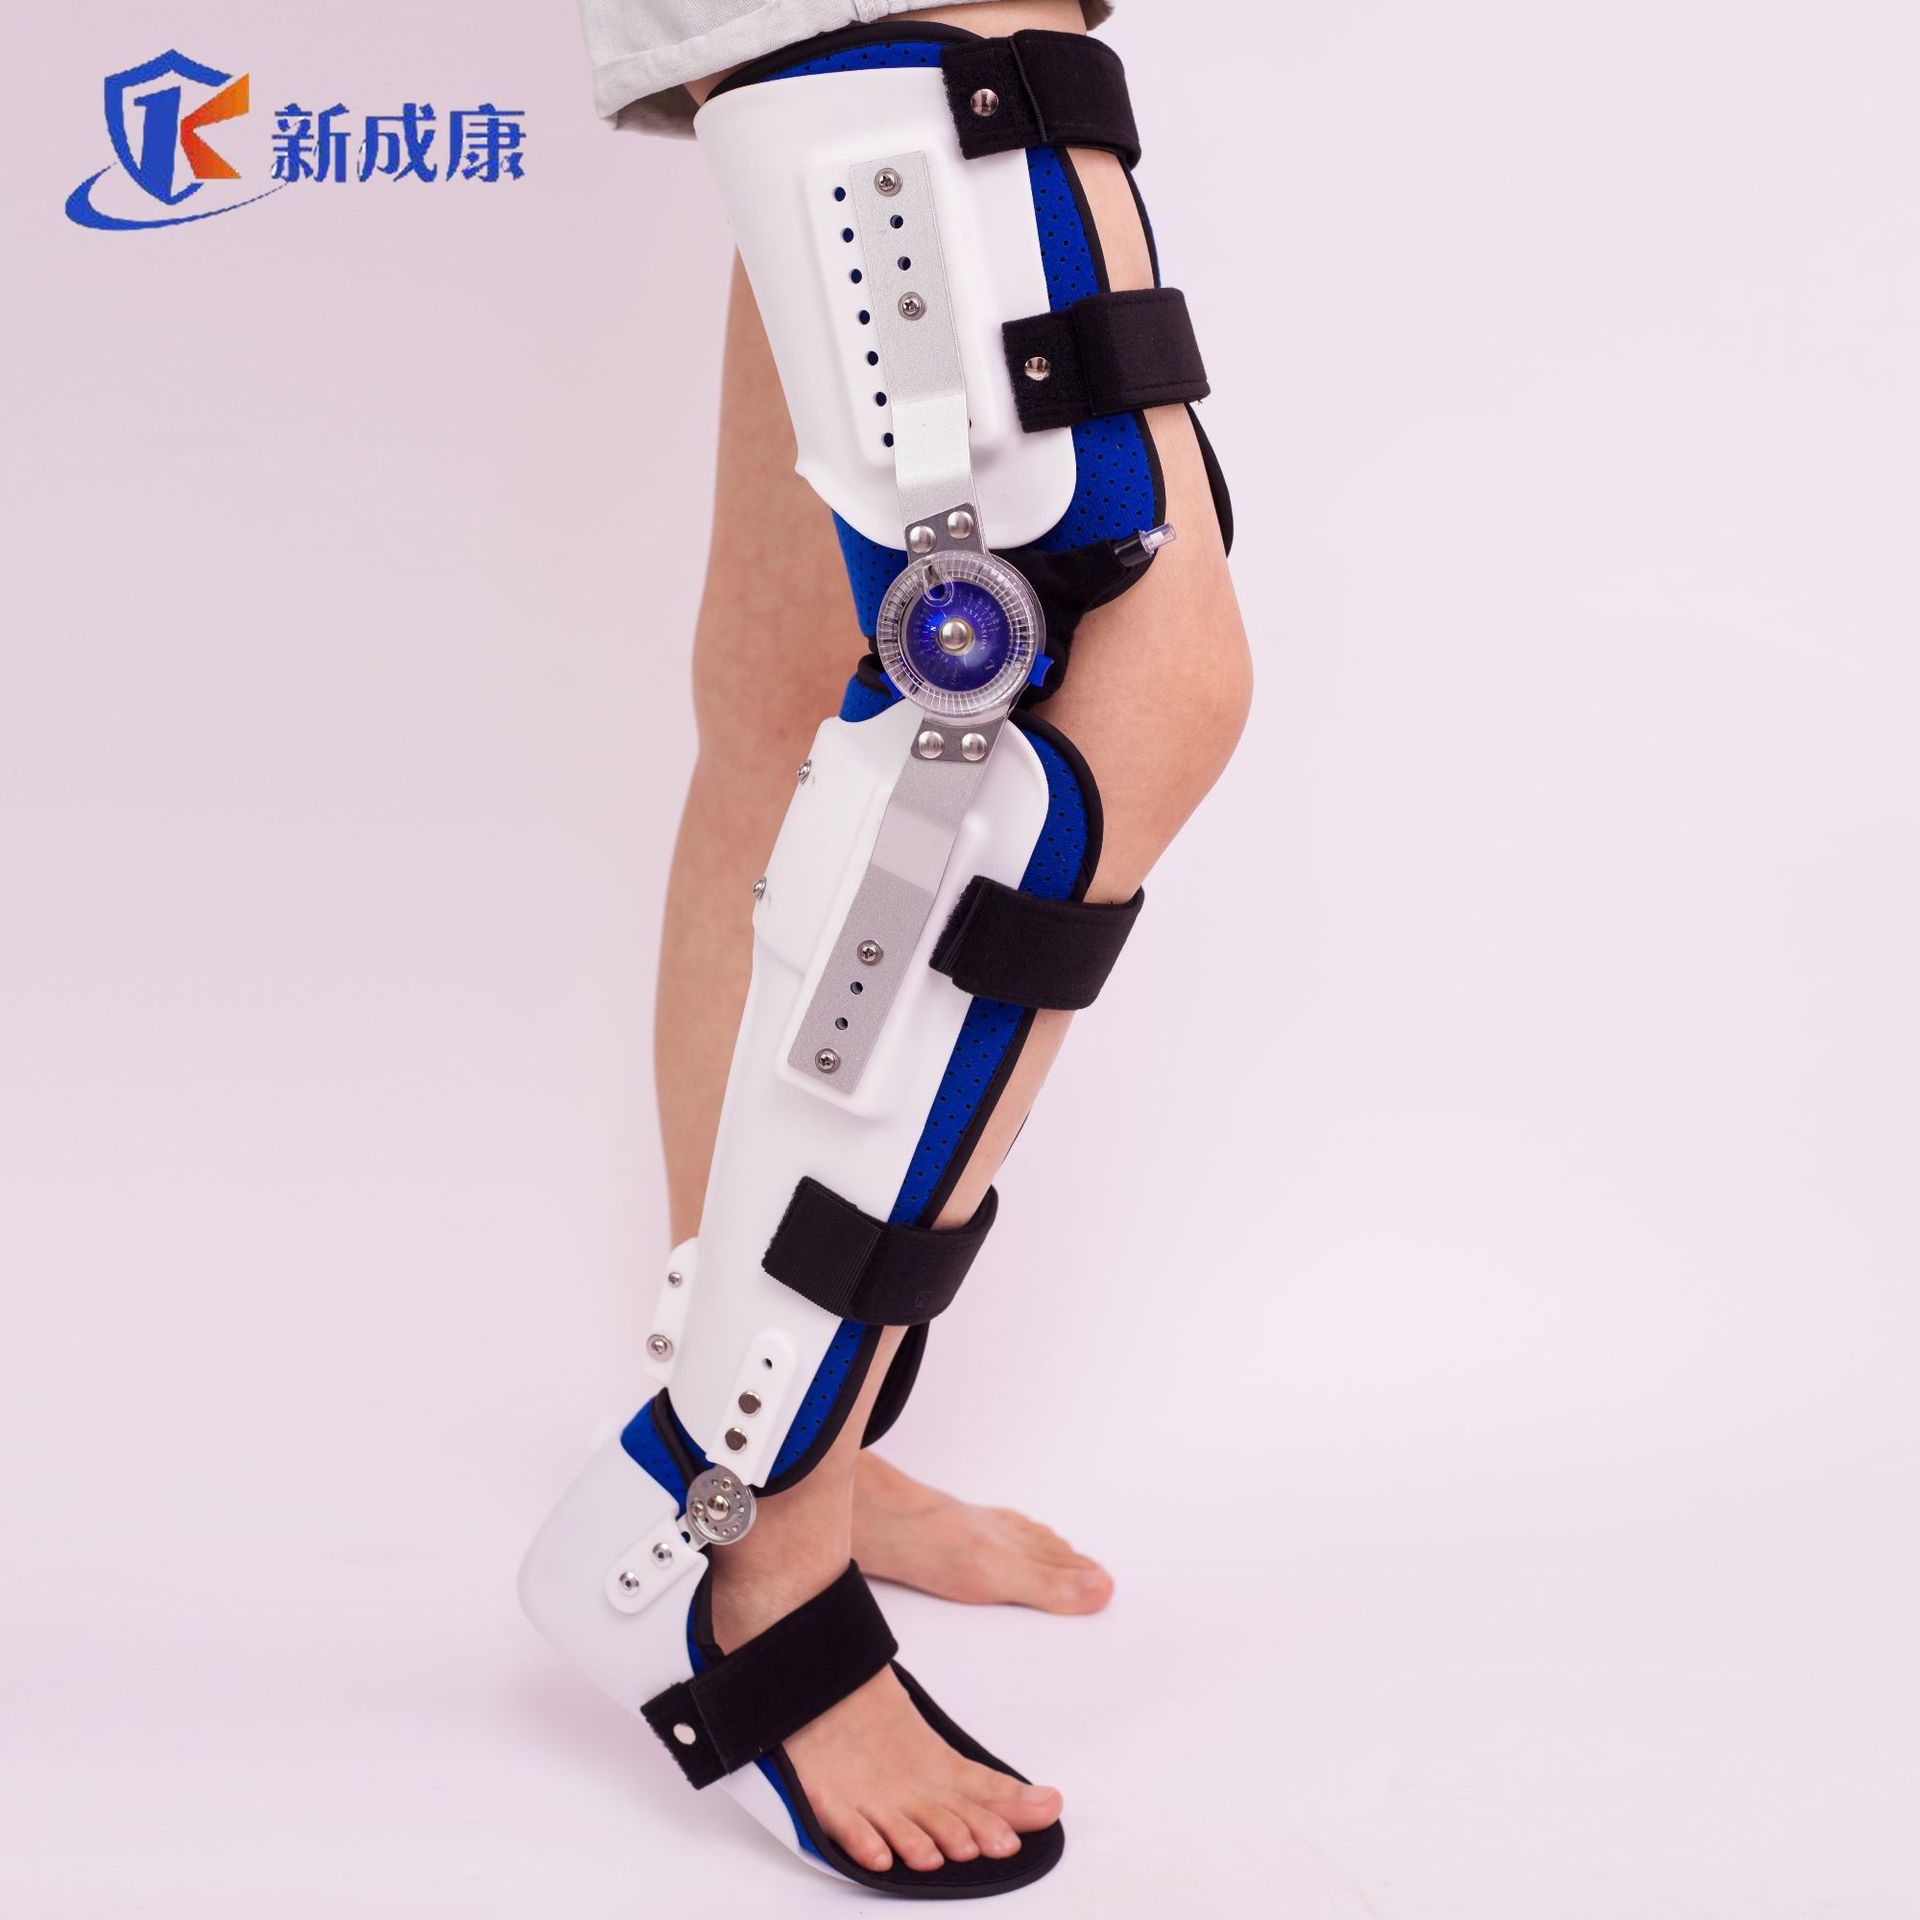 膝踝足固定支具 可调节腿部支具 膝关节固定康复器